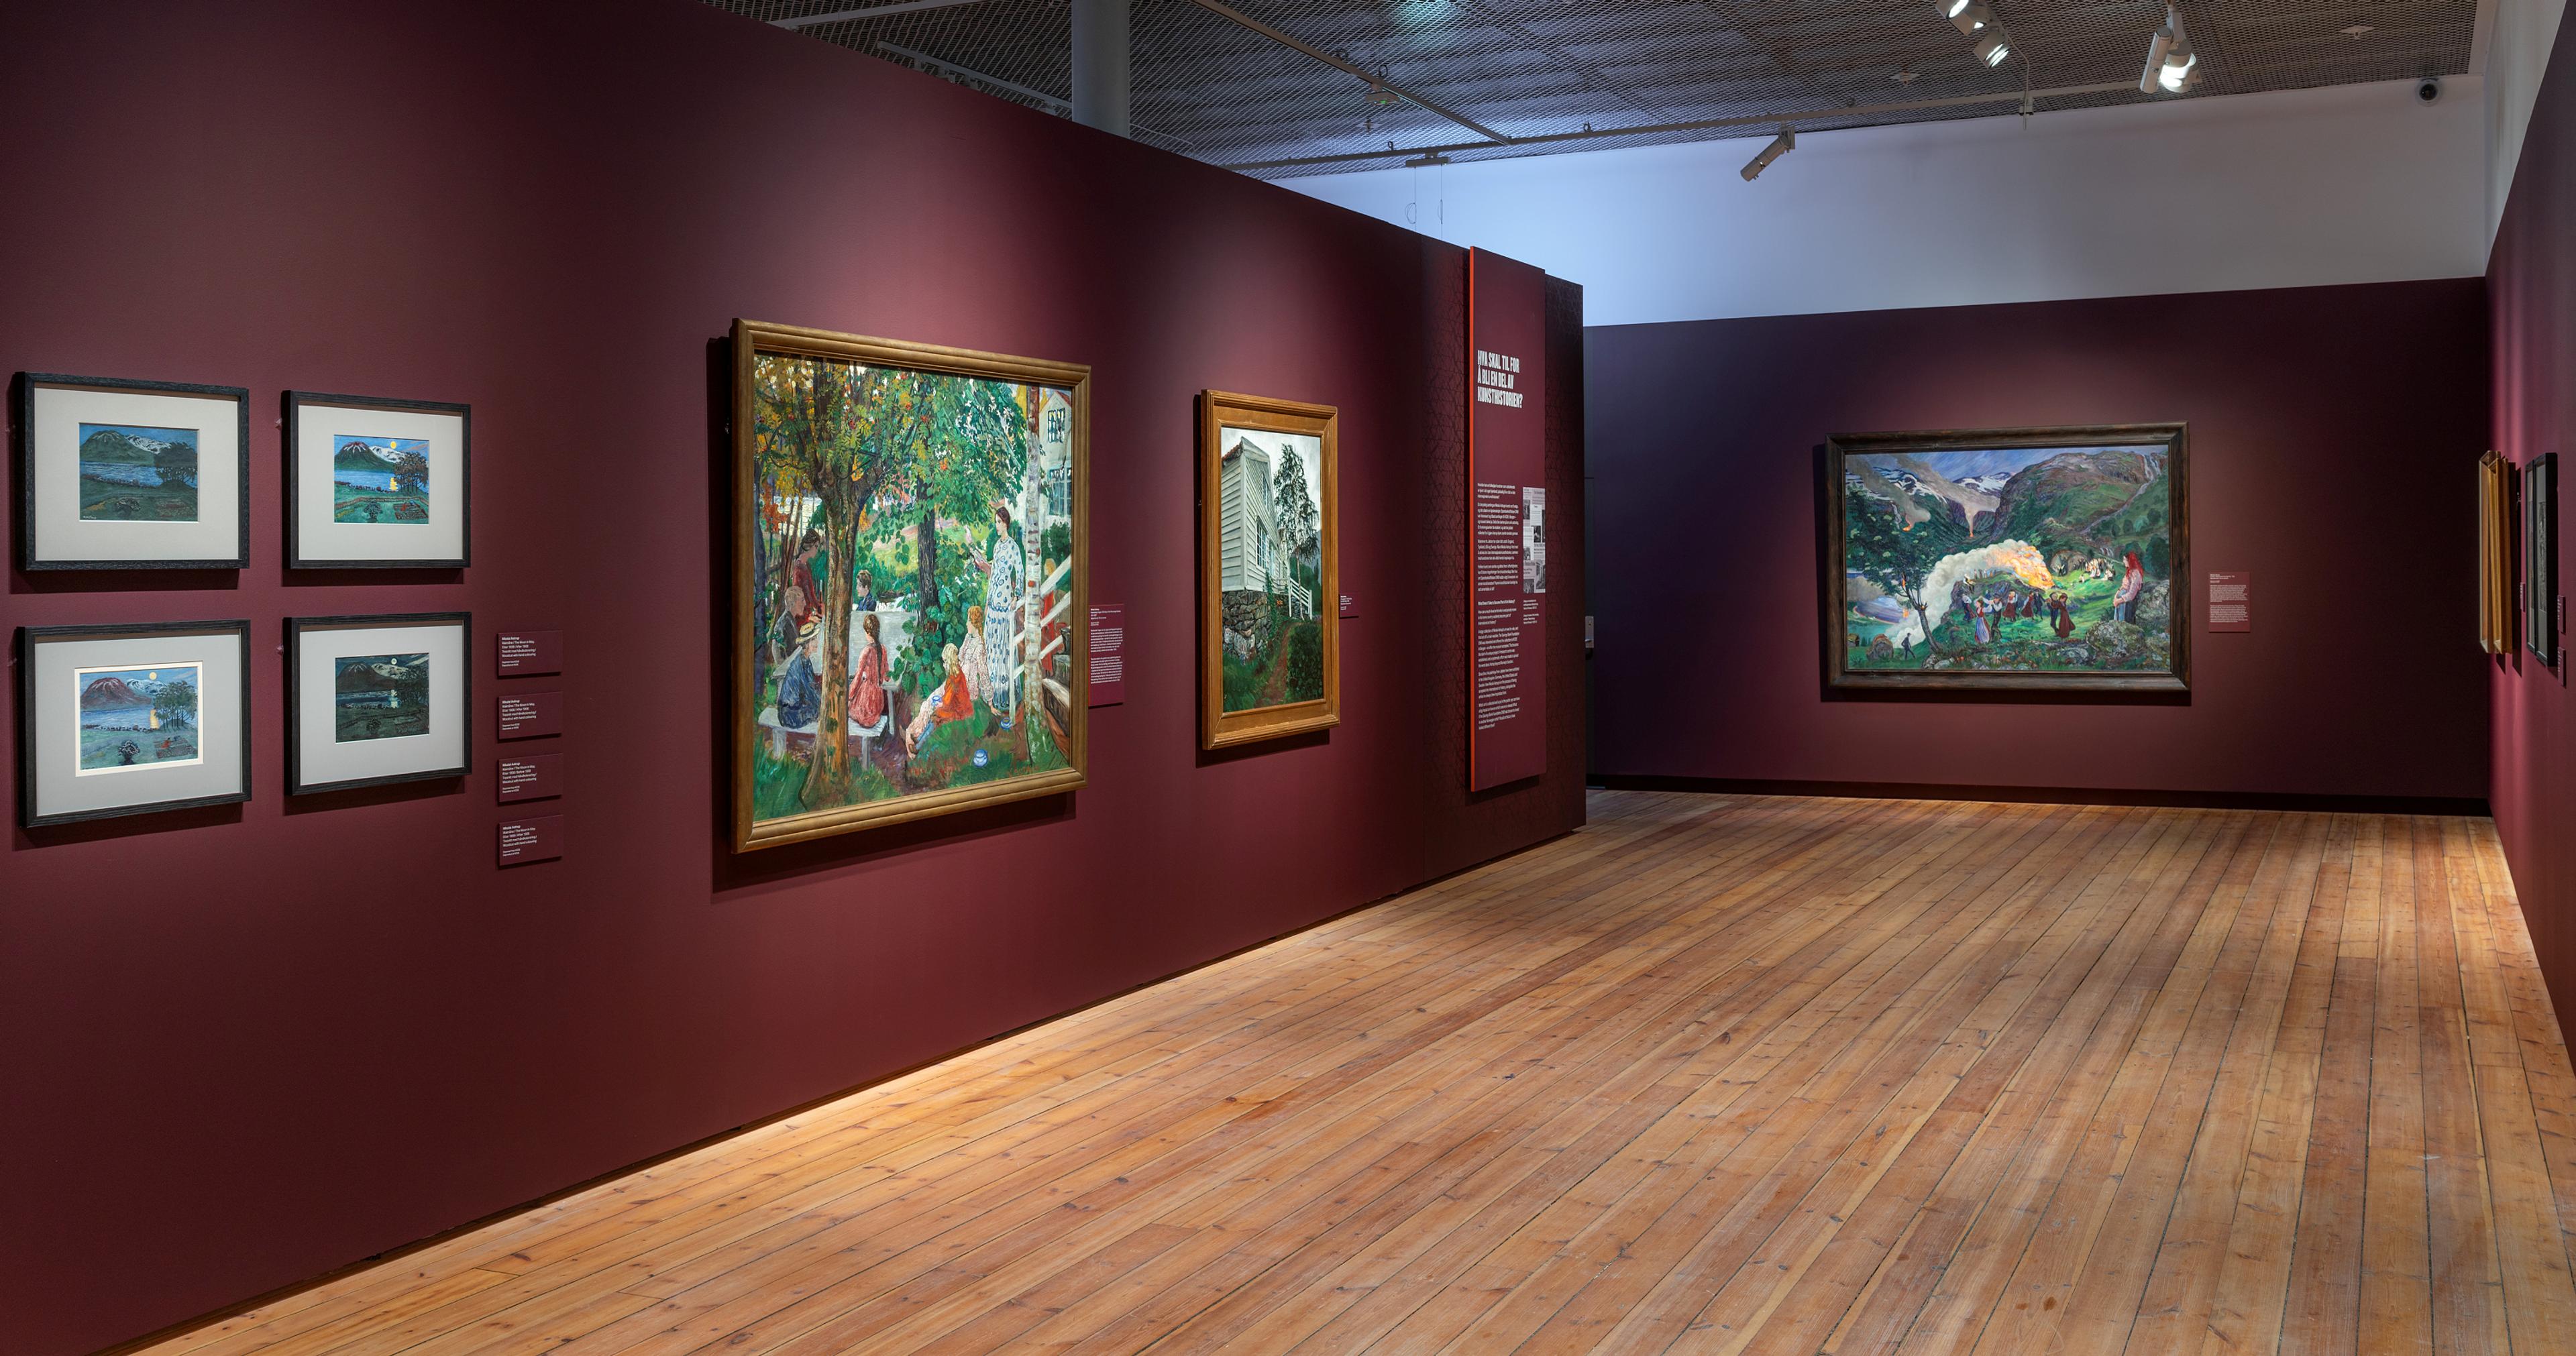 En rekke malerier av Nikolai Astrup i utstillingen Brikker, i et rom med mørk røde vegger